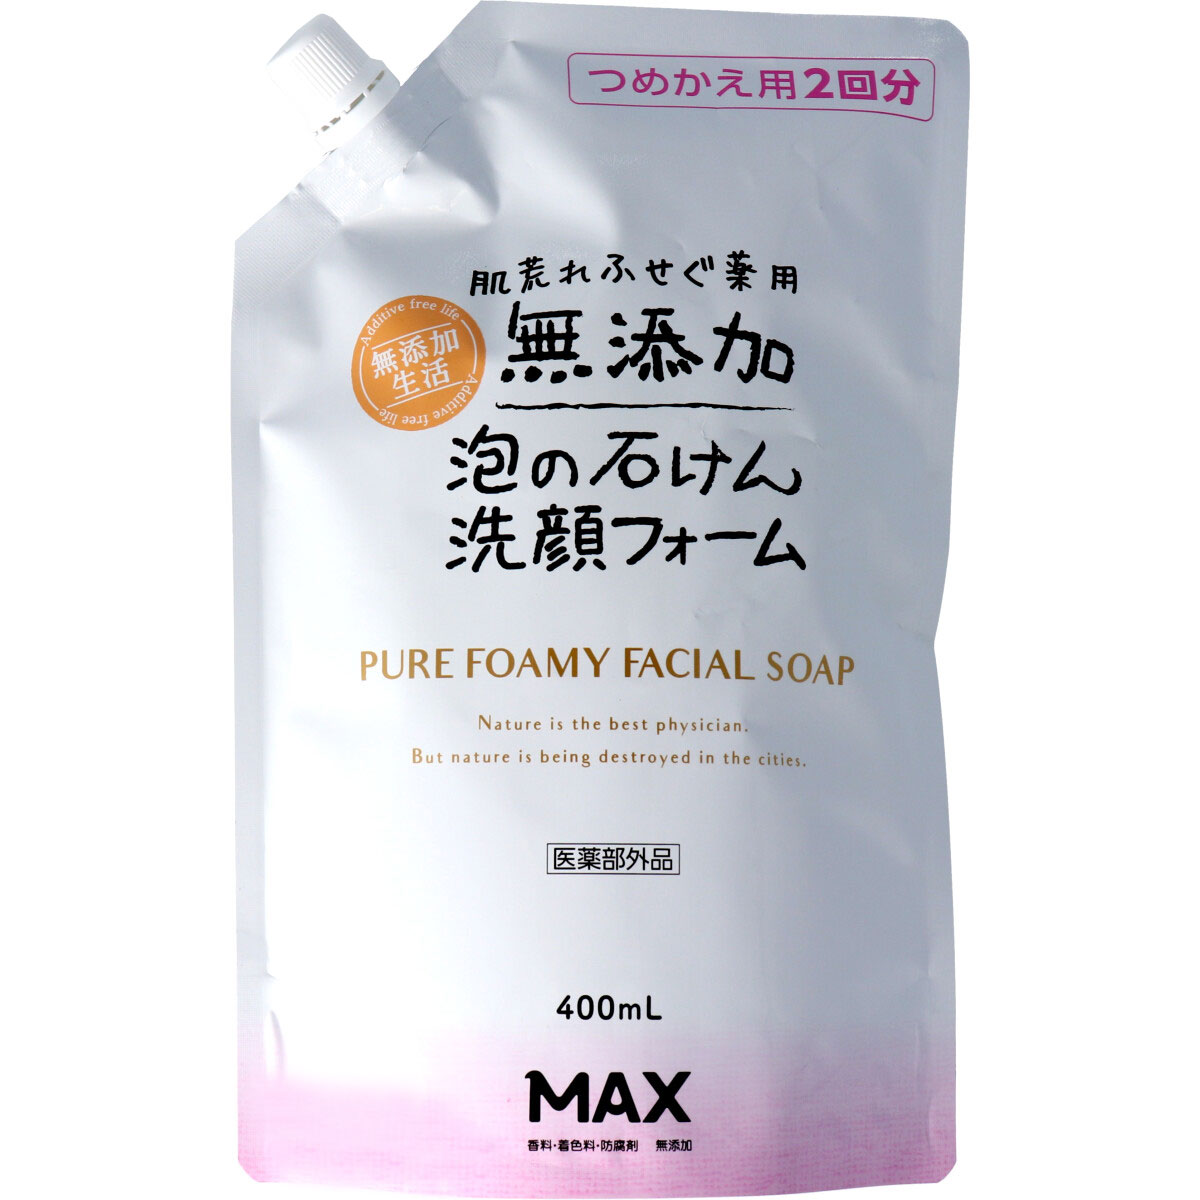 max 藥用無添加劑的泡沫400毫升筆芯肥皂潔面泡沫填充，防止馬克斯皮膚粗糙